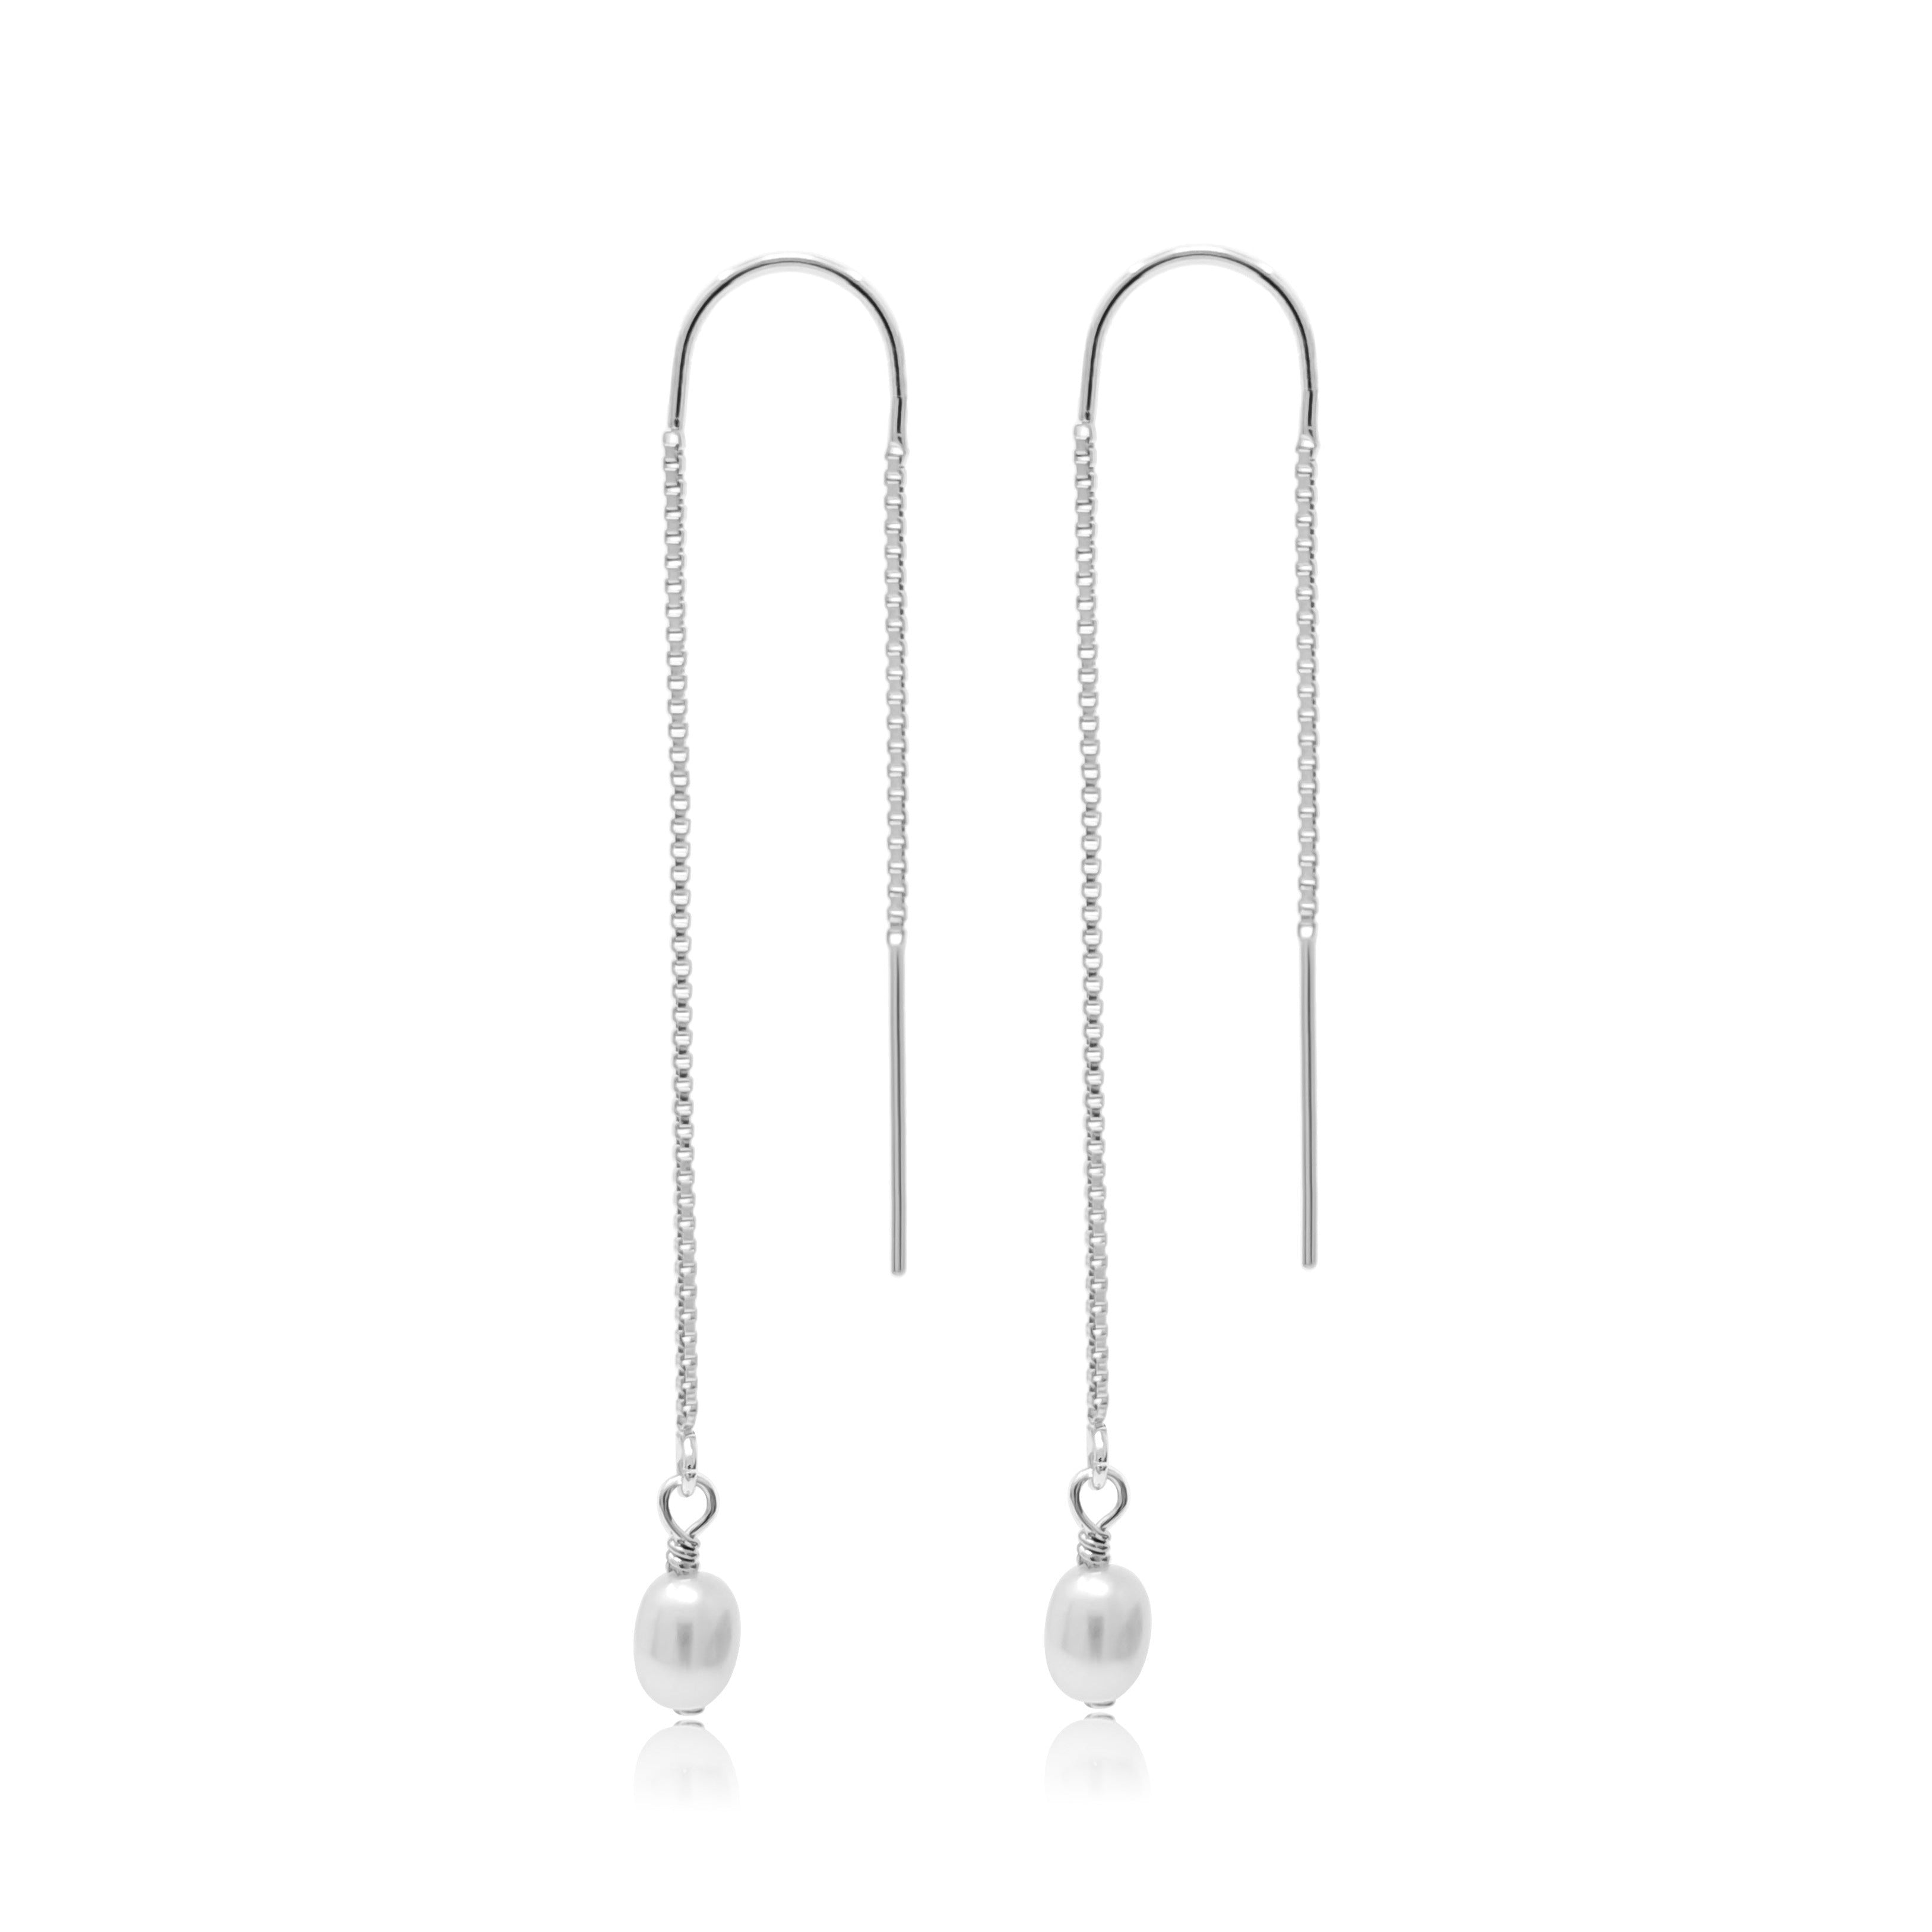 Pearl Threader Earrings in Sterling Silver